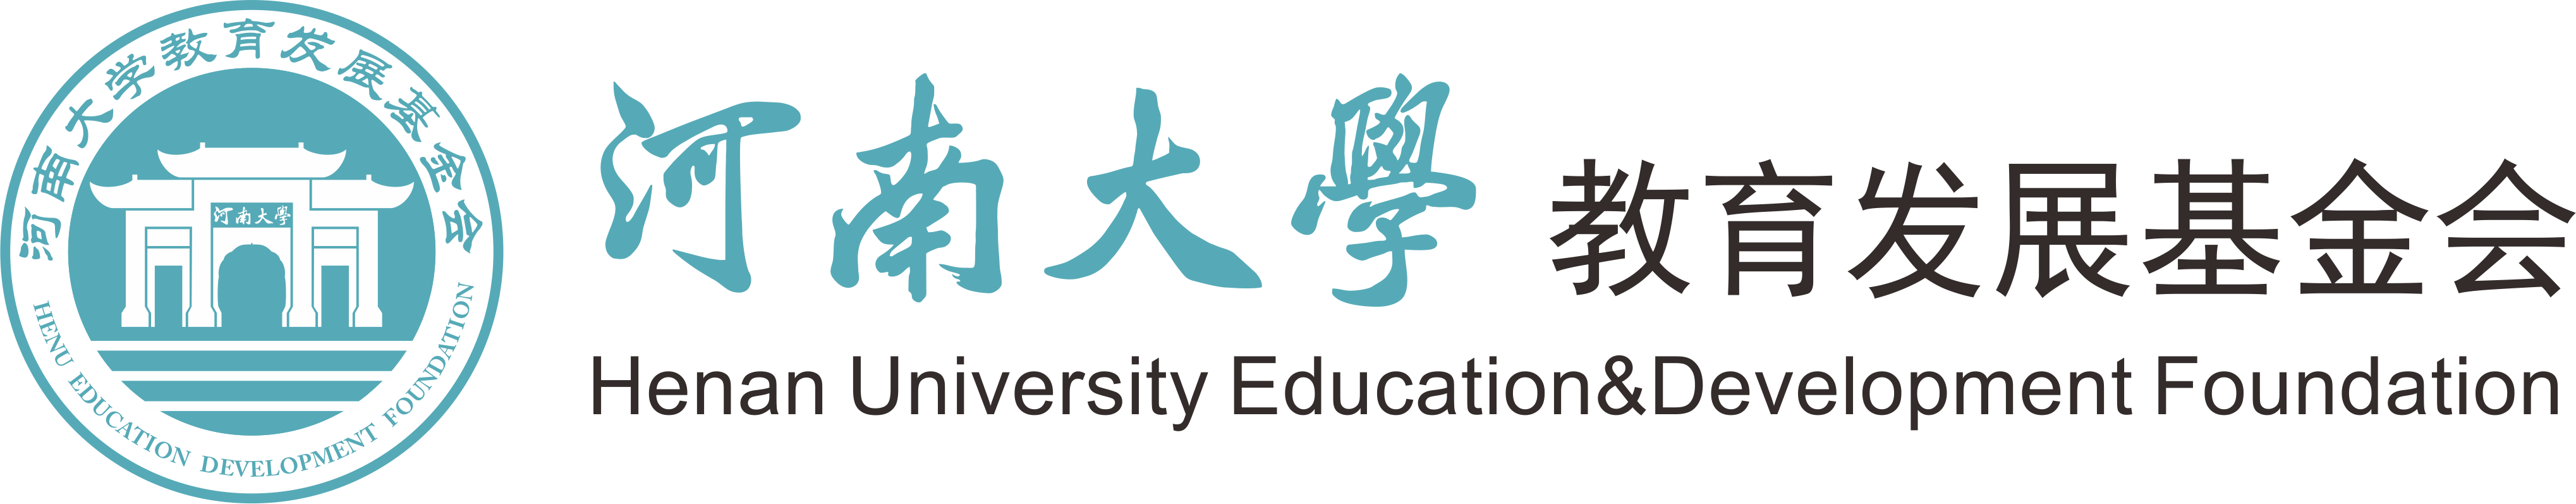 河南大学教育发展基金会